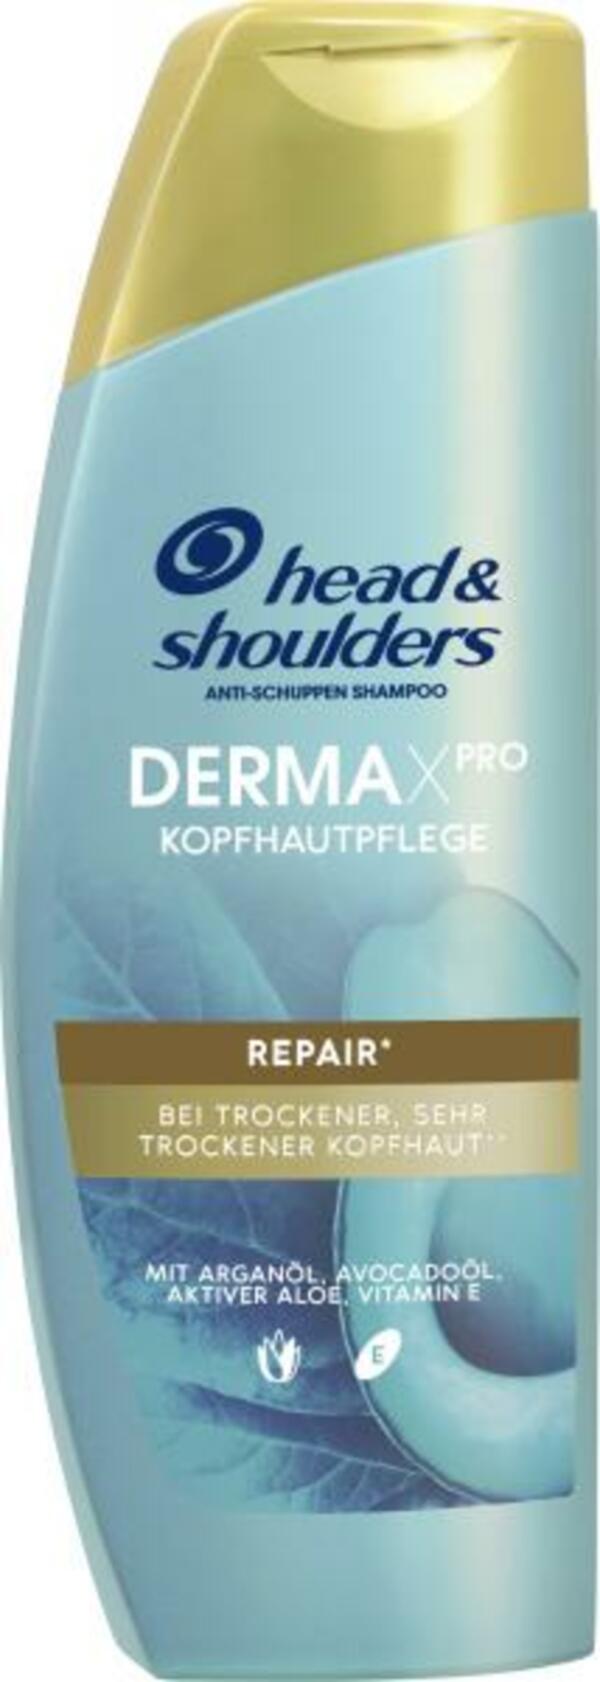 Bild 1 von Head & Shoulders Anti-Schuppen Shampoo Dermax Pro Repair*